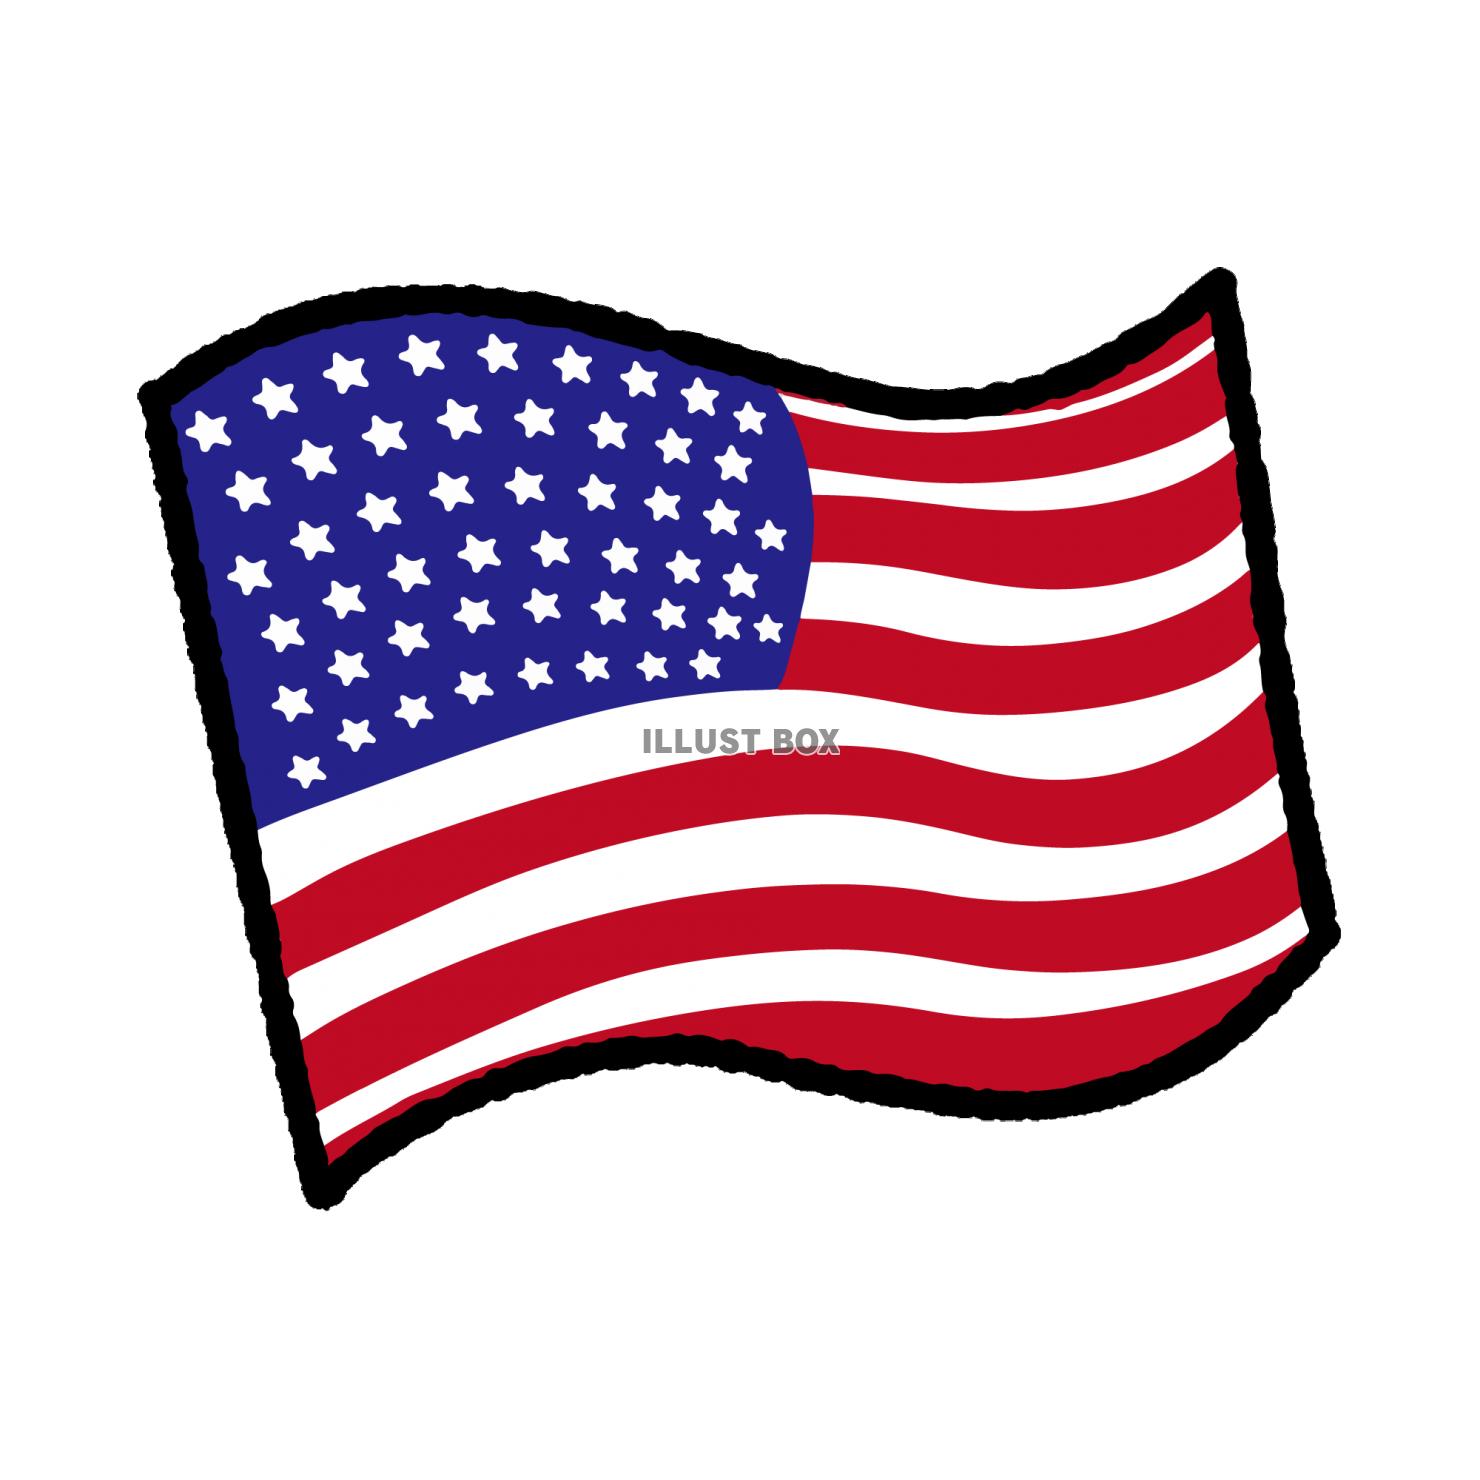 シンプルなアメリカの国旗イラスト